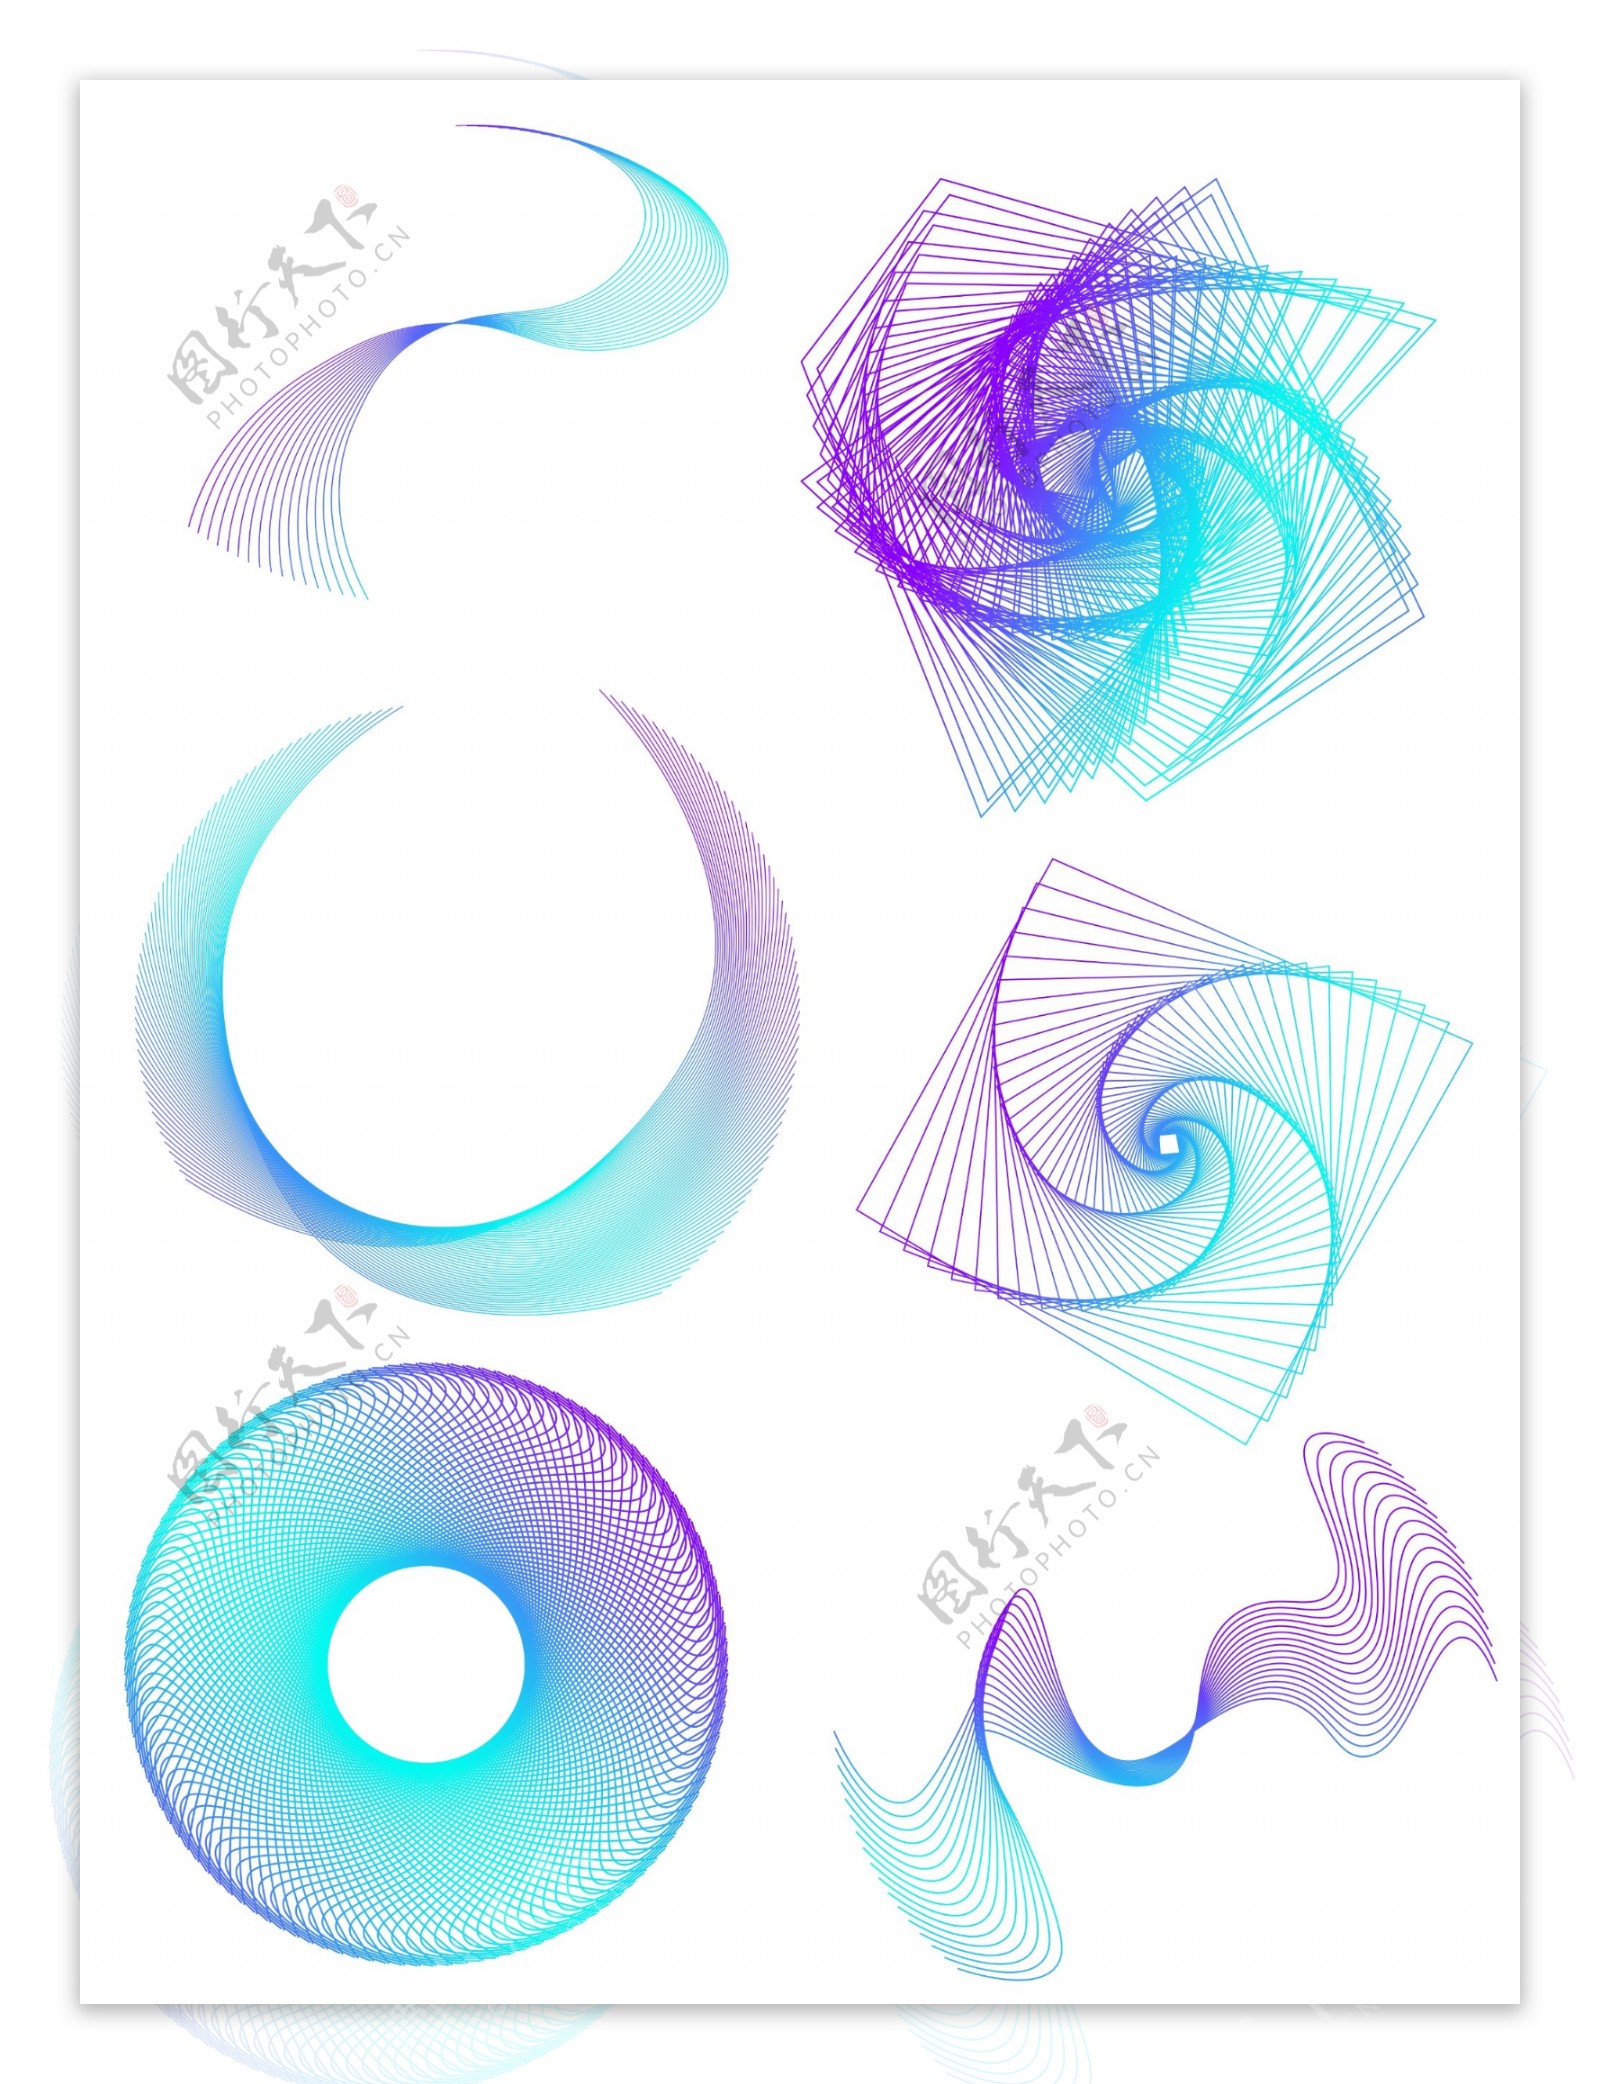 科技底纹线条蓝紫渐变装饰元素设计